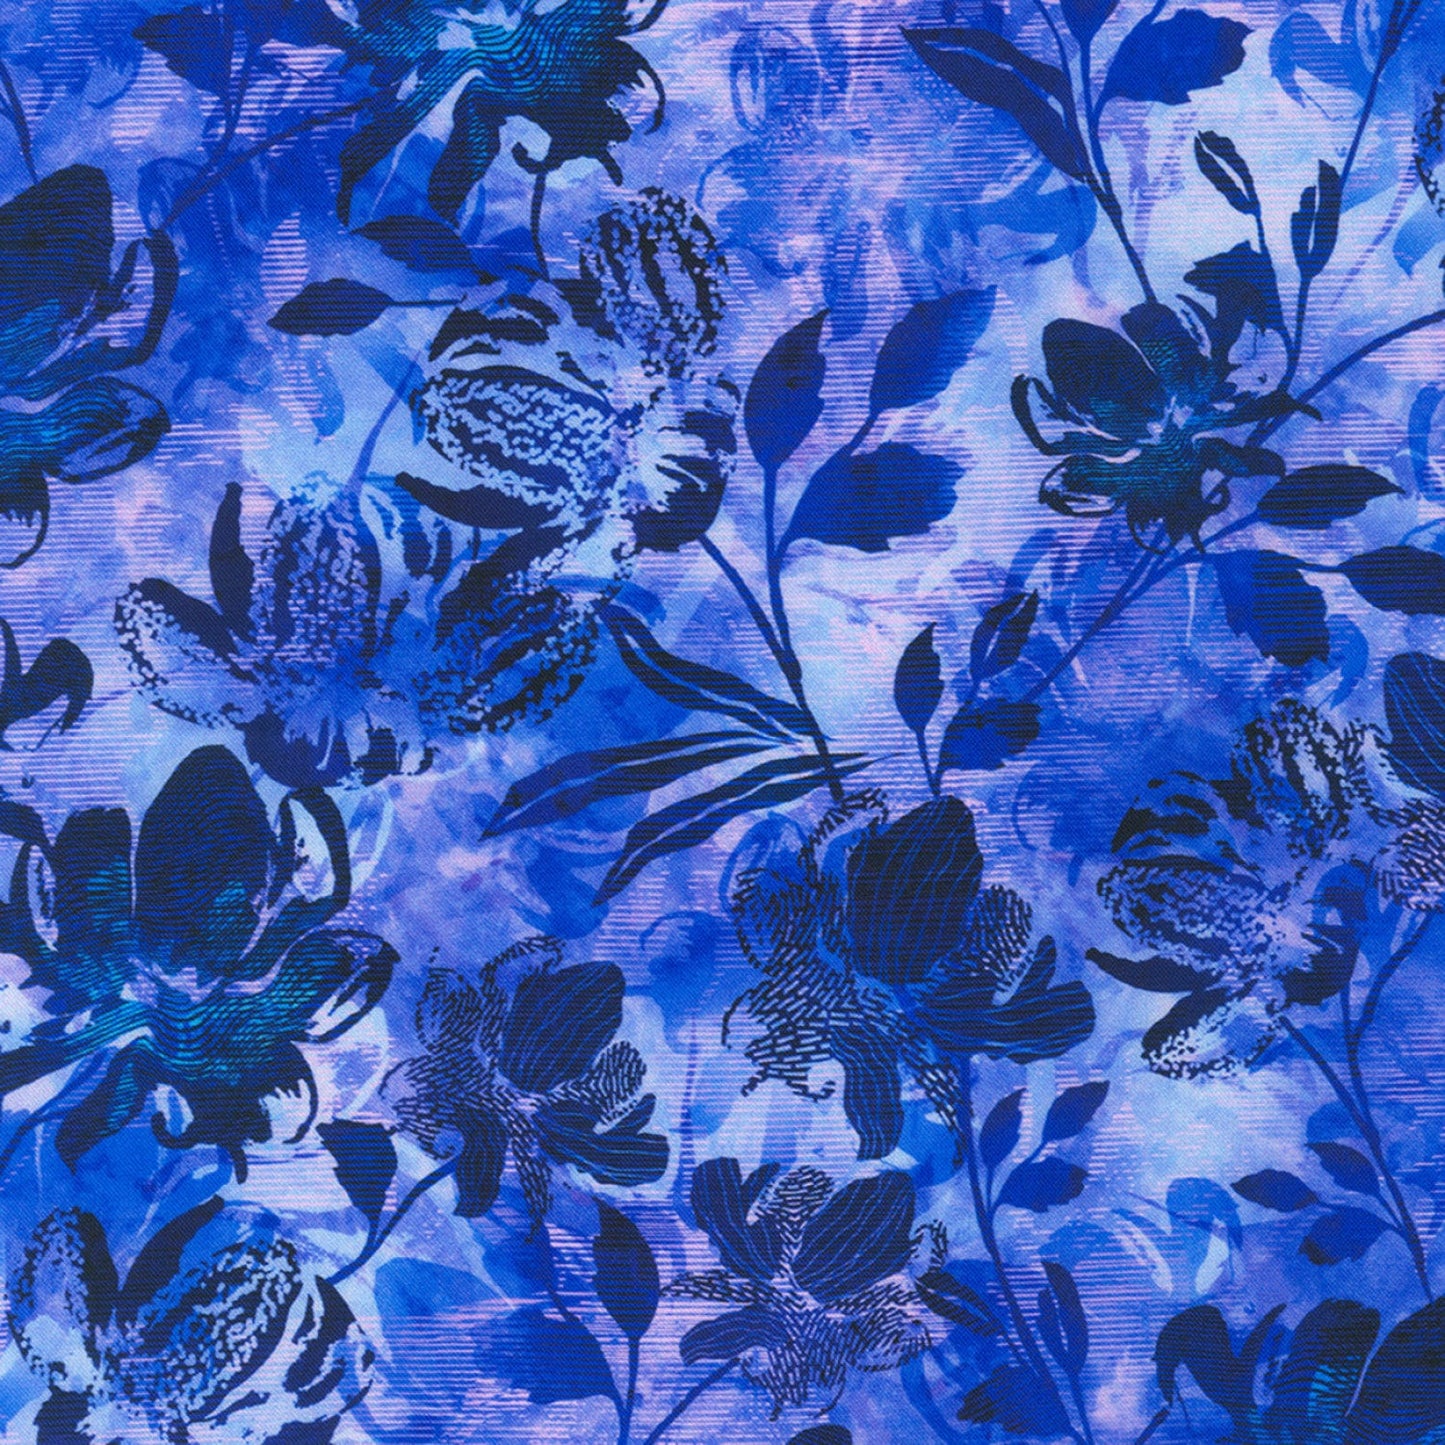 Wild Vista 20 Piece Fat Quarter Bundle, Robert Kaufman FQ-2059-20, Purple Green Floral Fabric, 18 x 22 Fabric Cuts